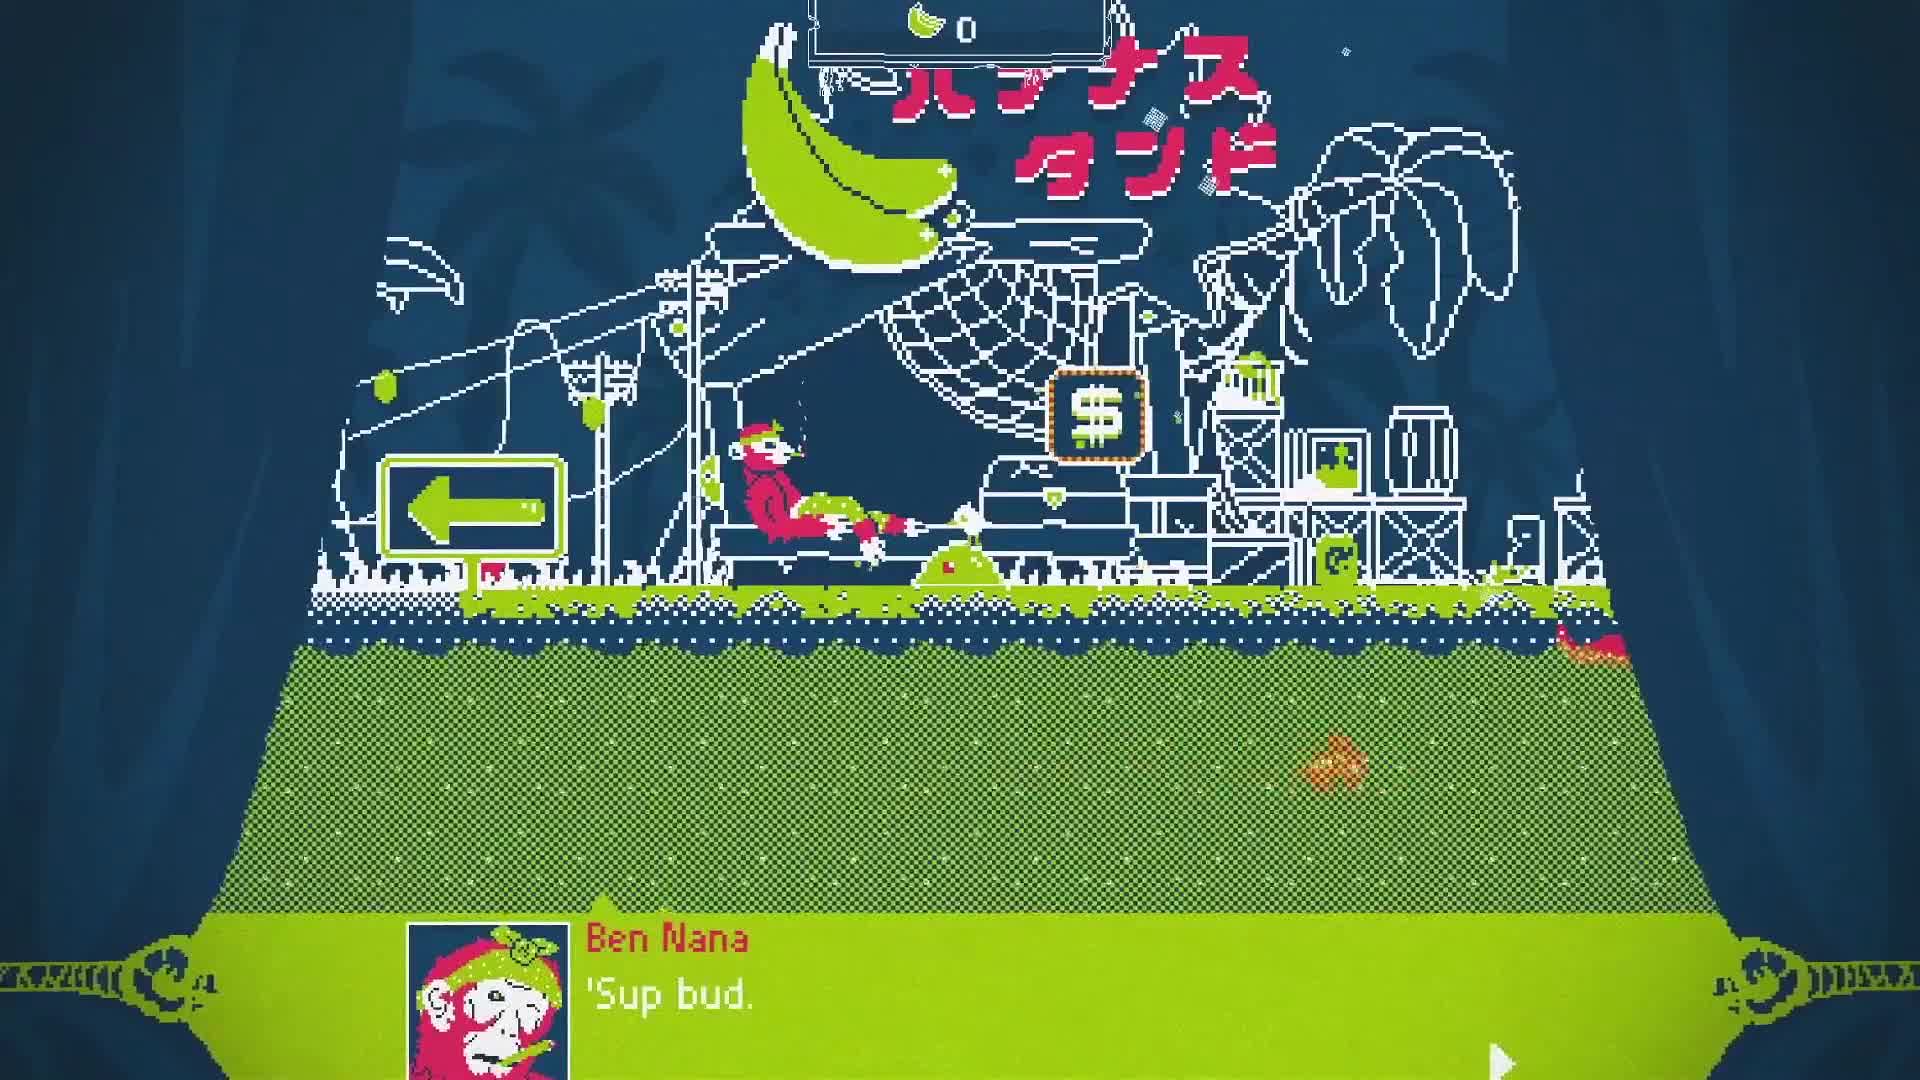 Slime-san - Blackbird's Kraken DLC Trailer